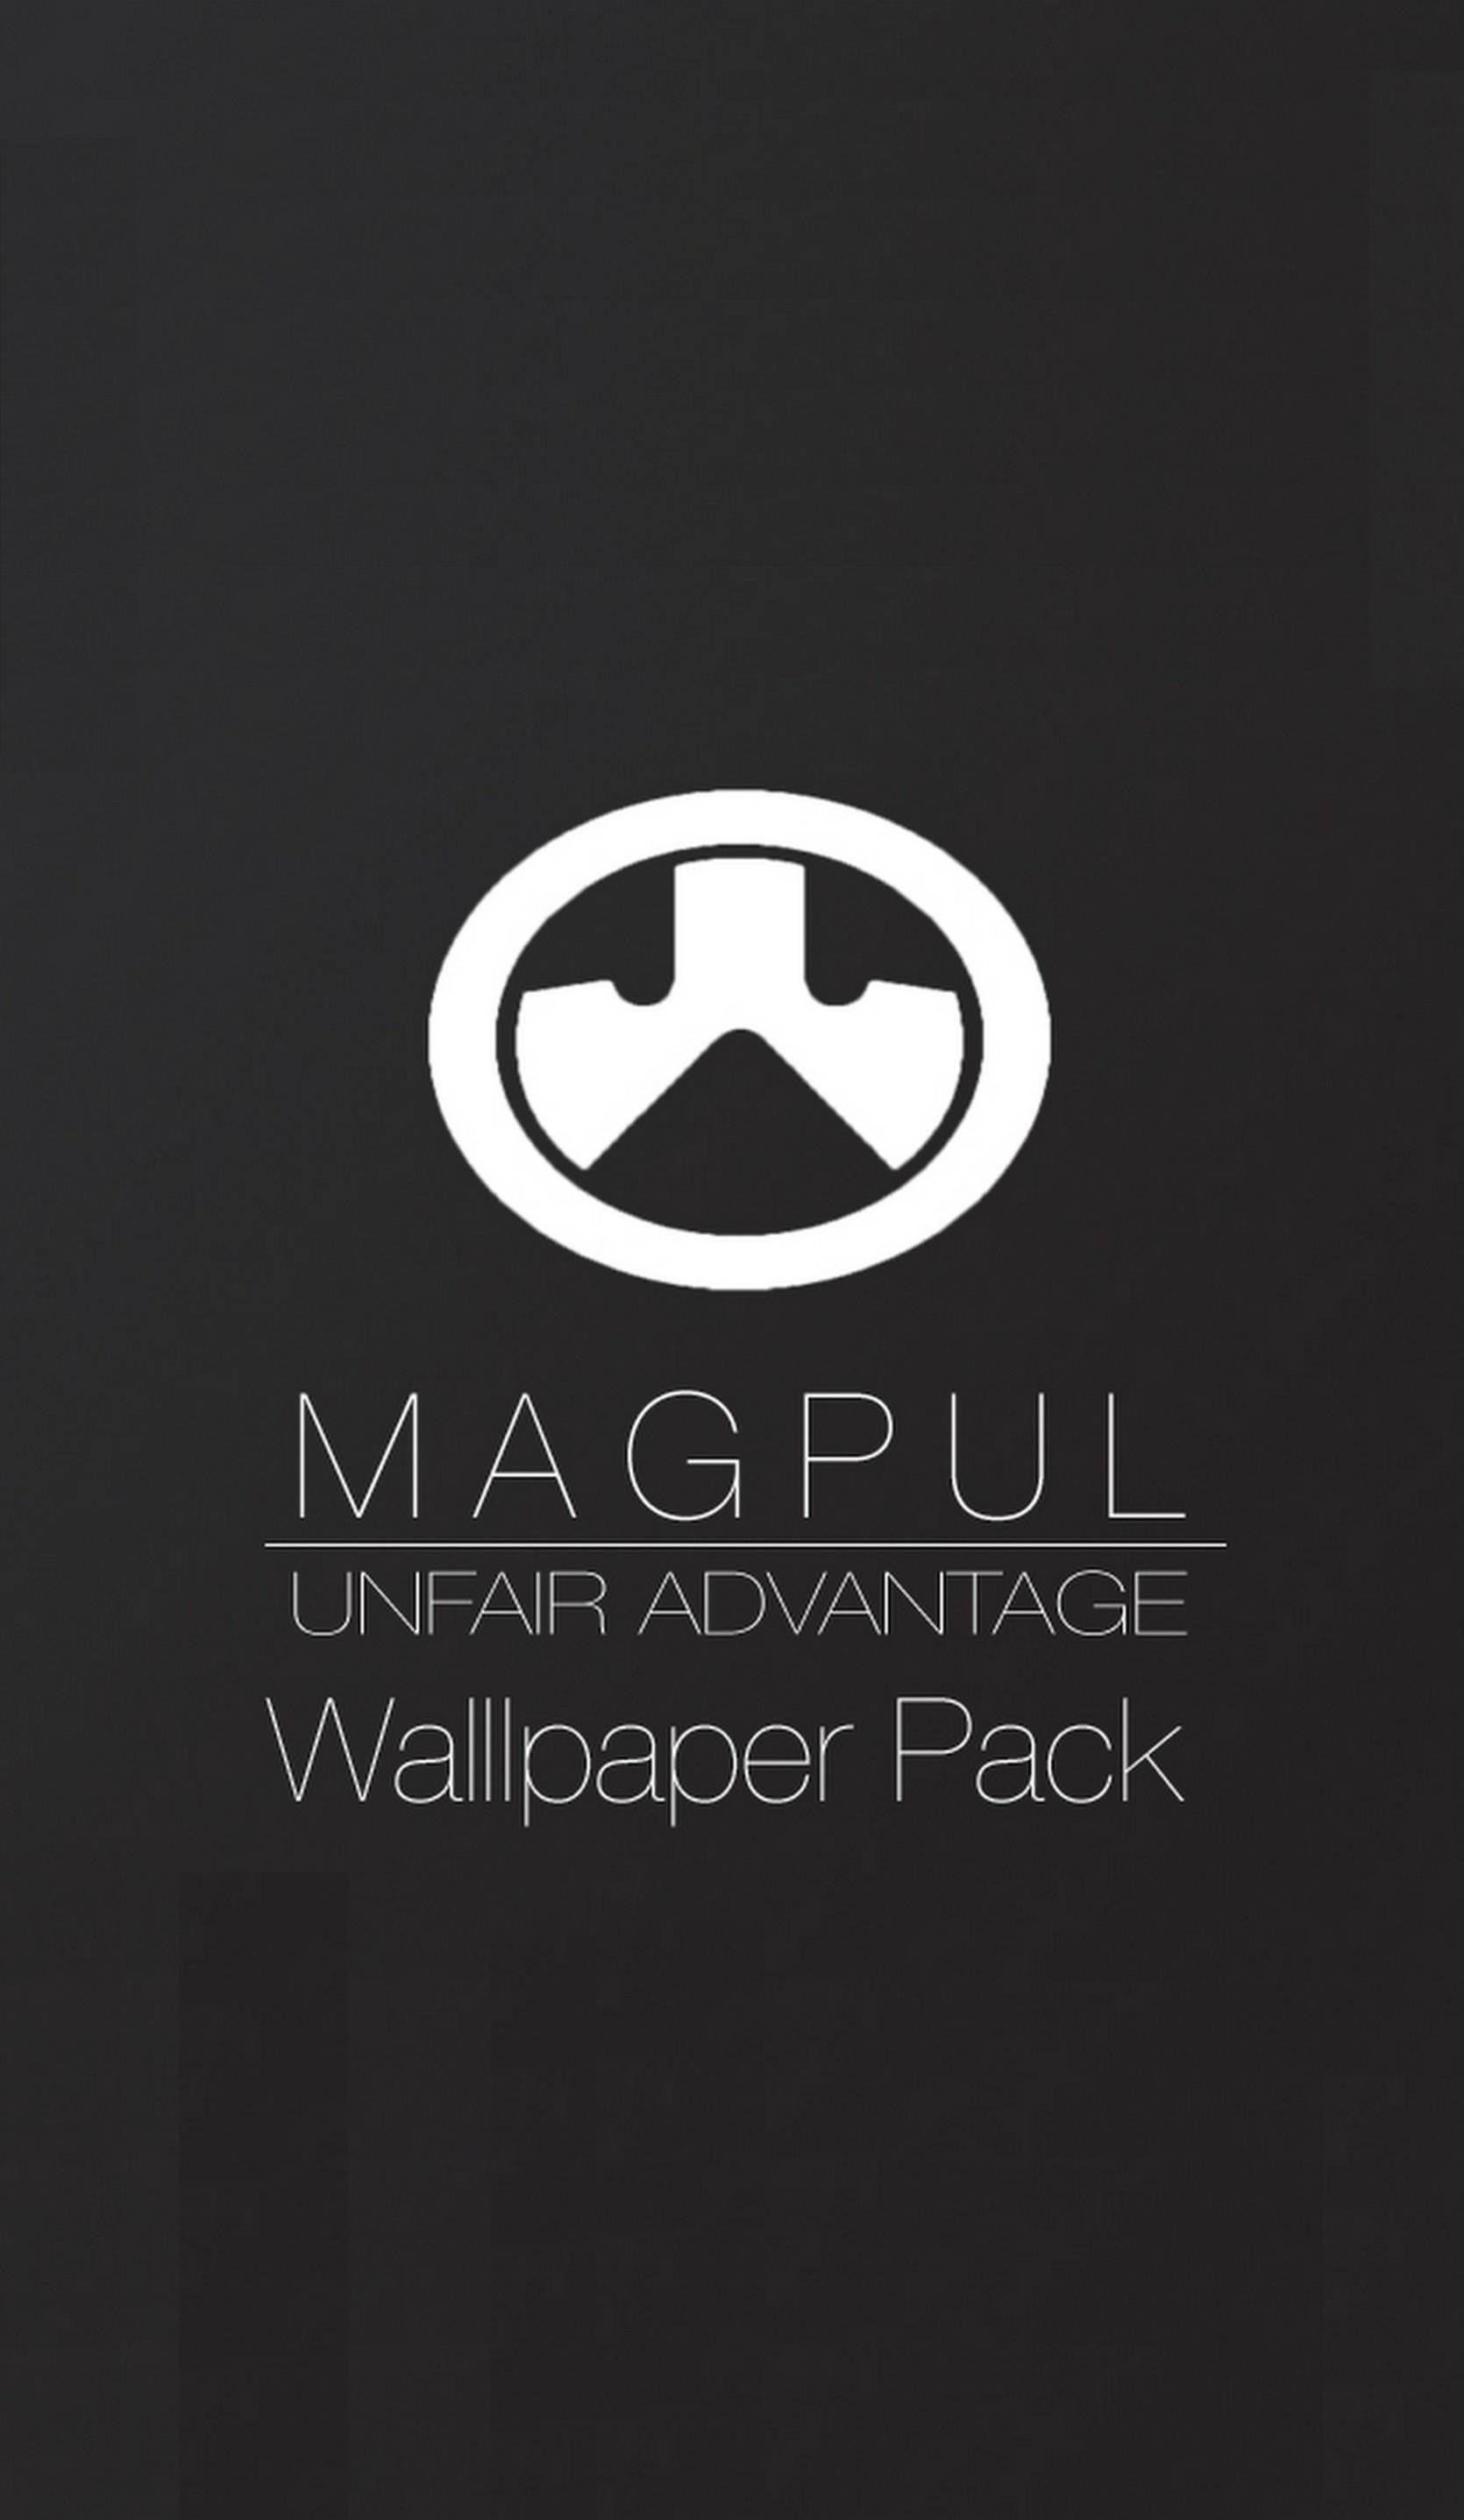 Magpul Wallpapers